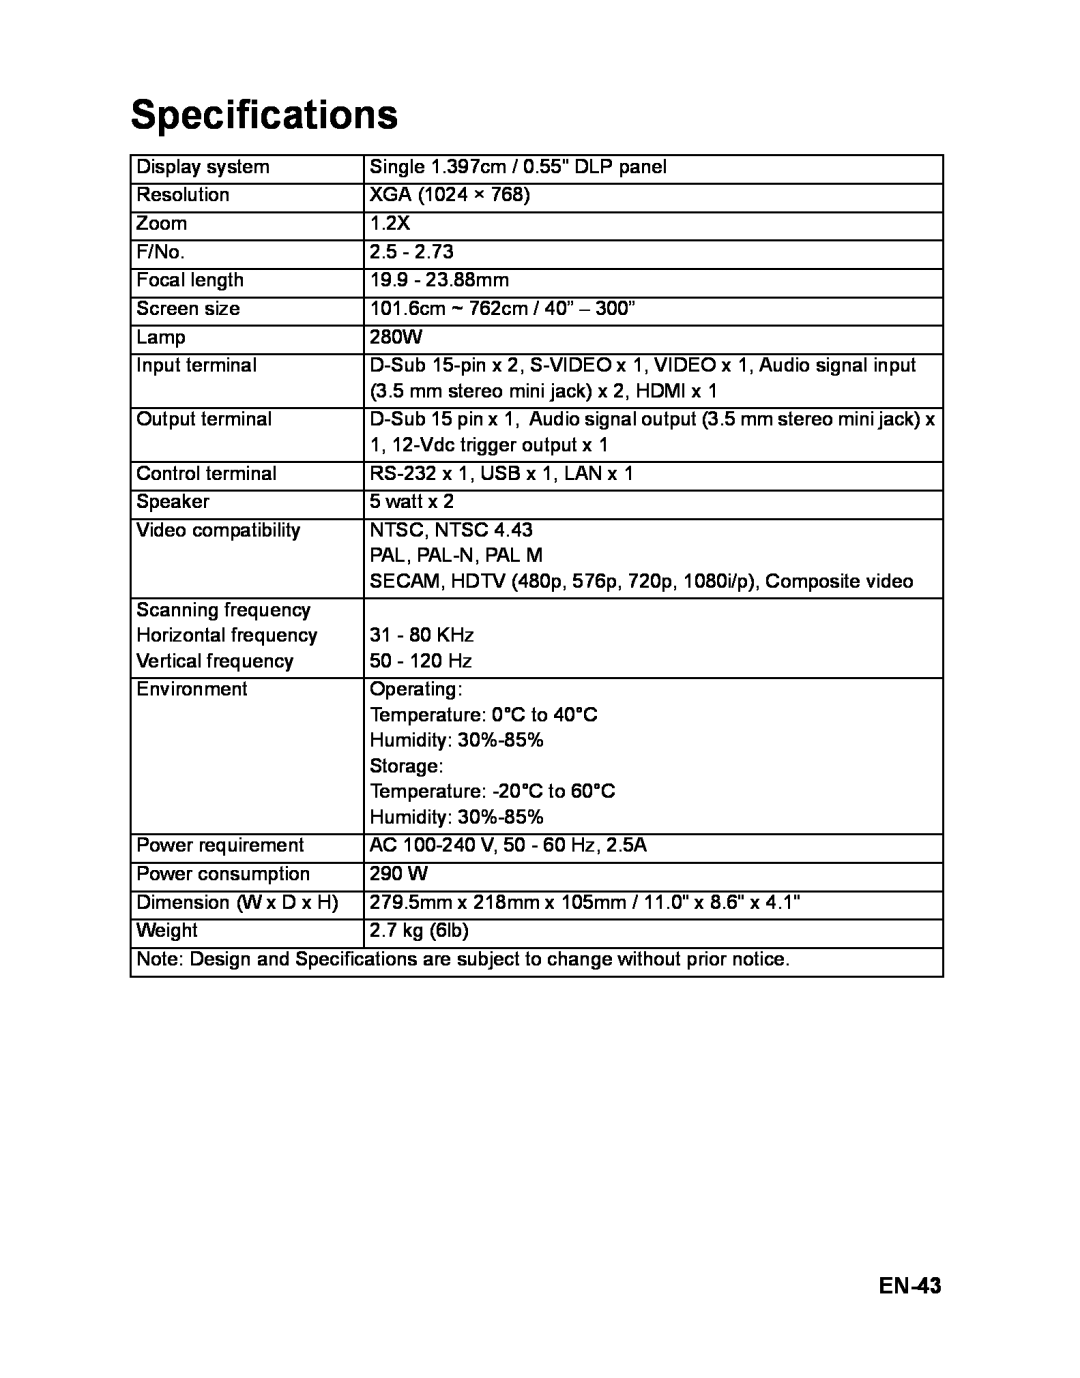 ViewSonic PJD6251 warranty Specifications, EN-43 